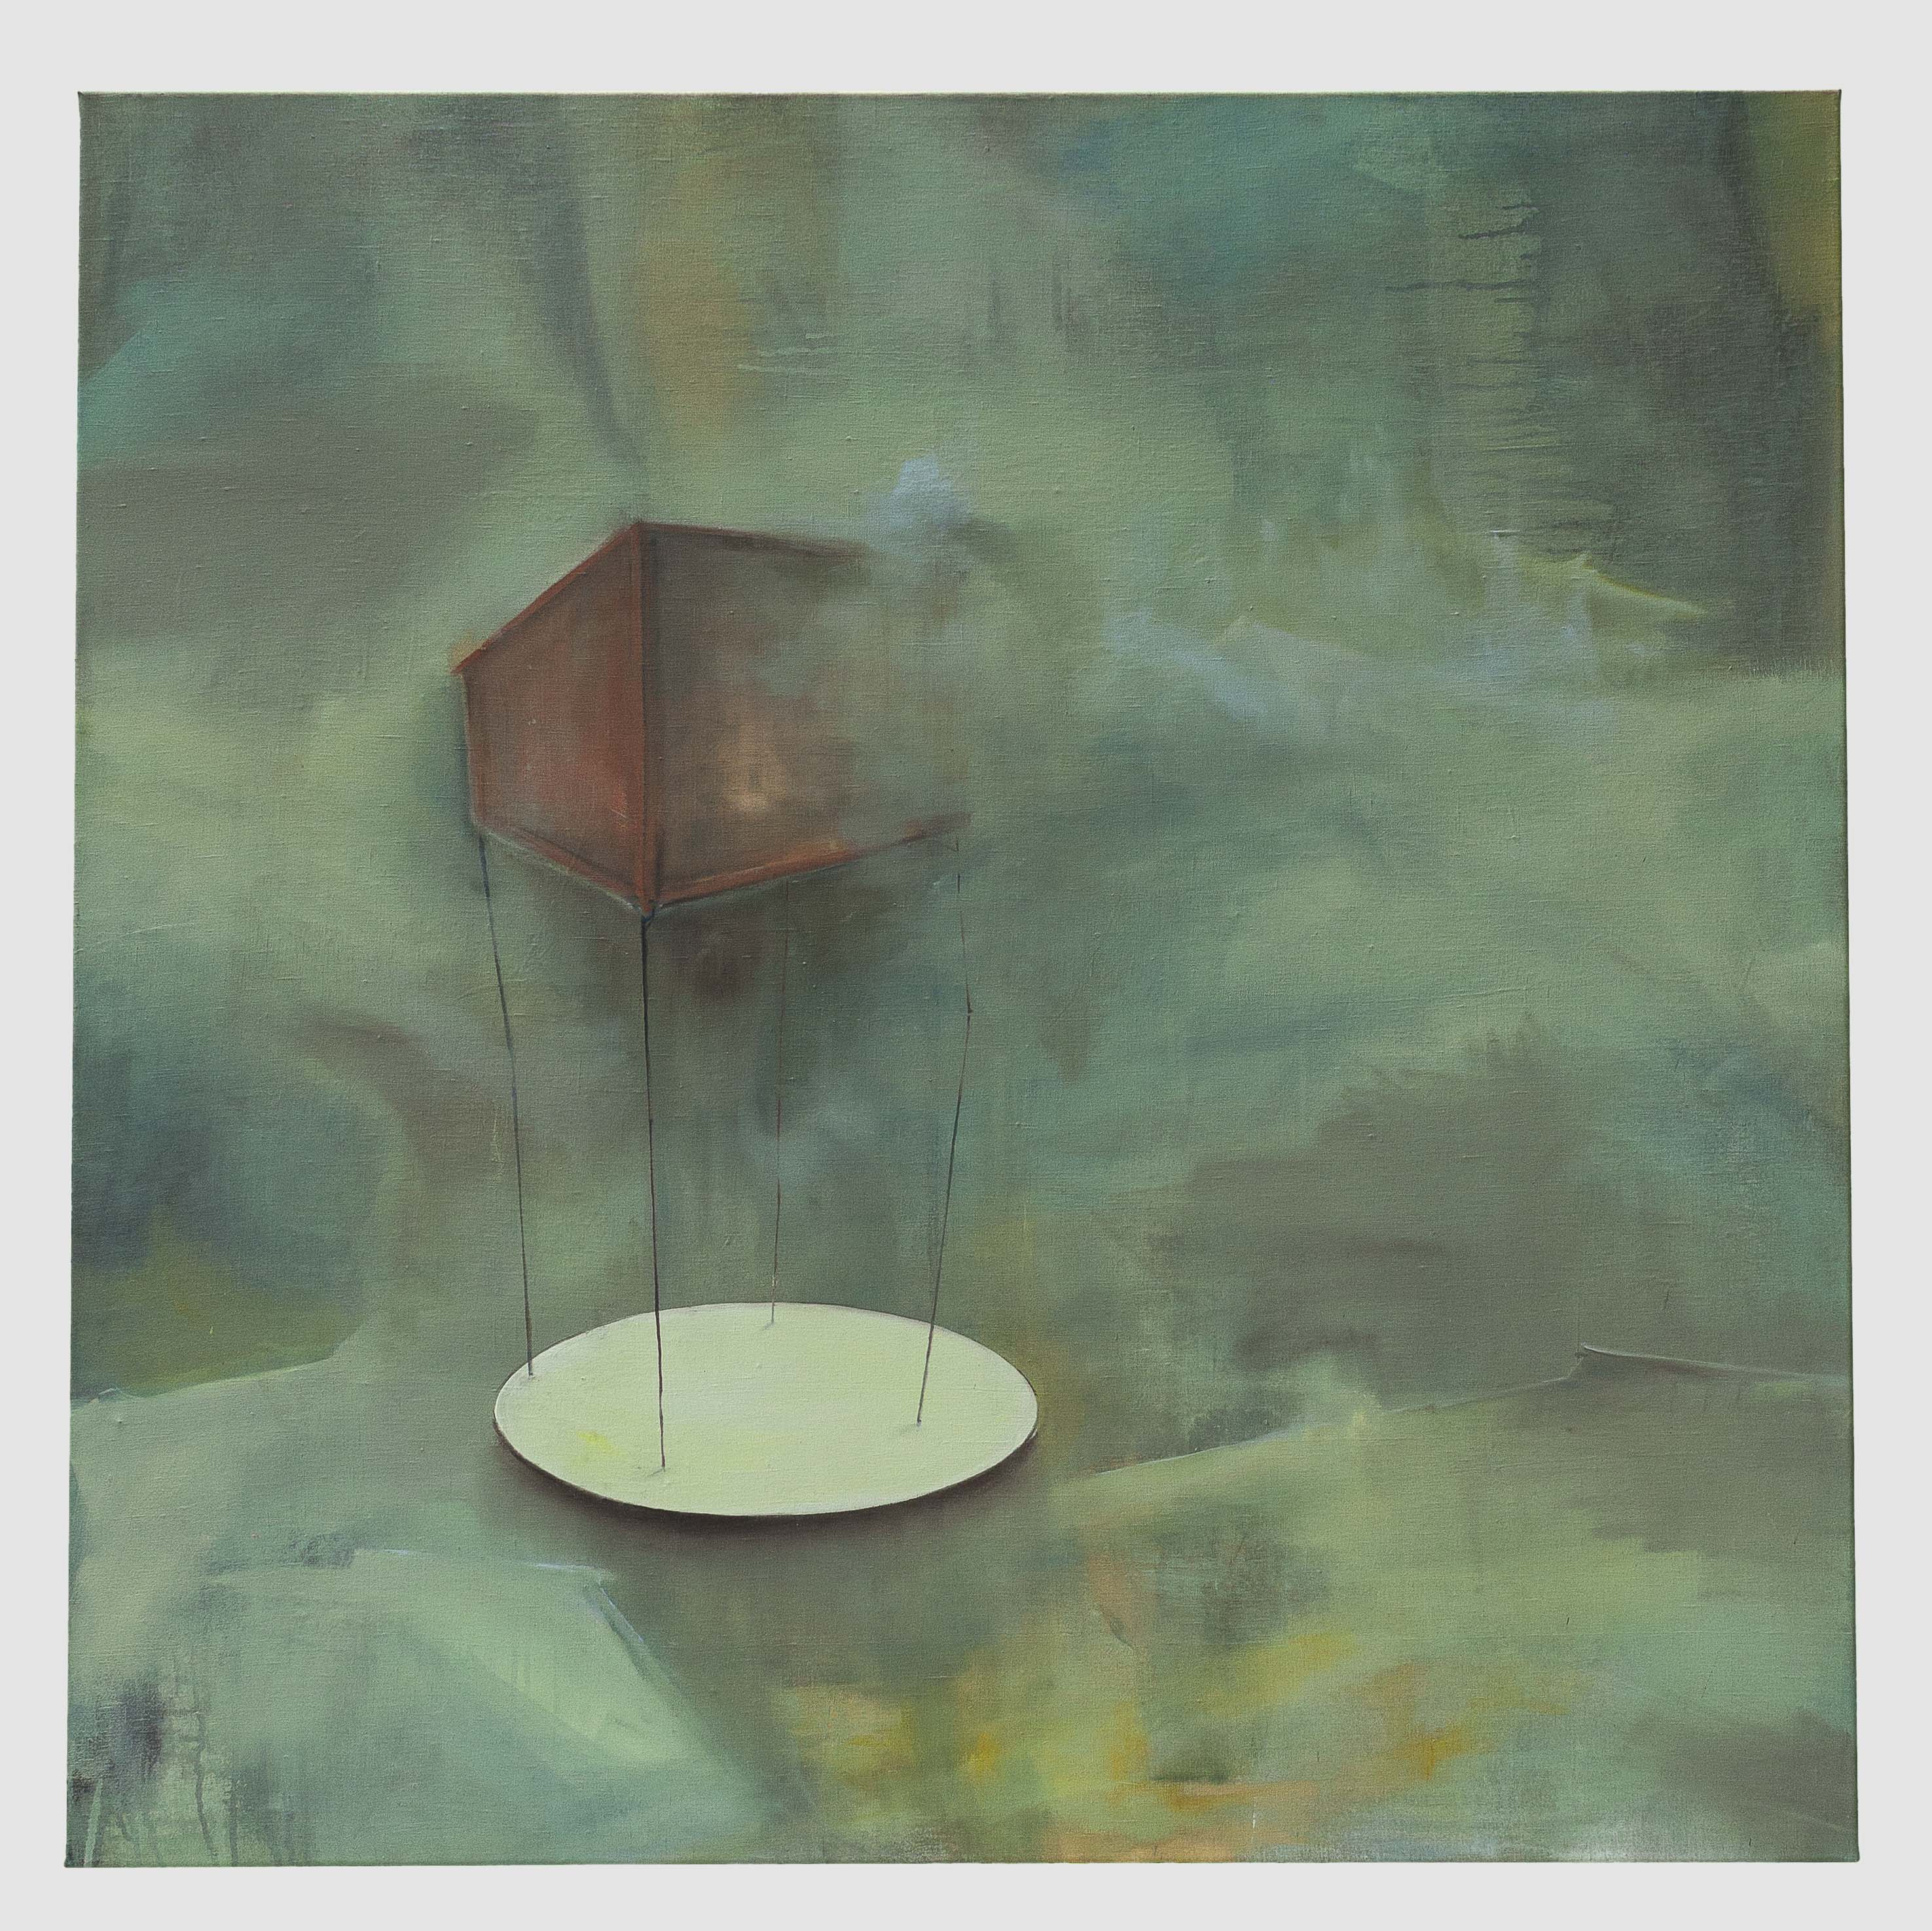 Wache, 2013, 130 x 130 cm, Pigmente, Acryl, Öl auf LW